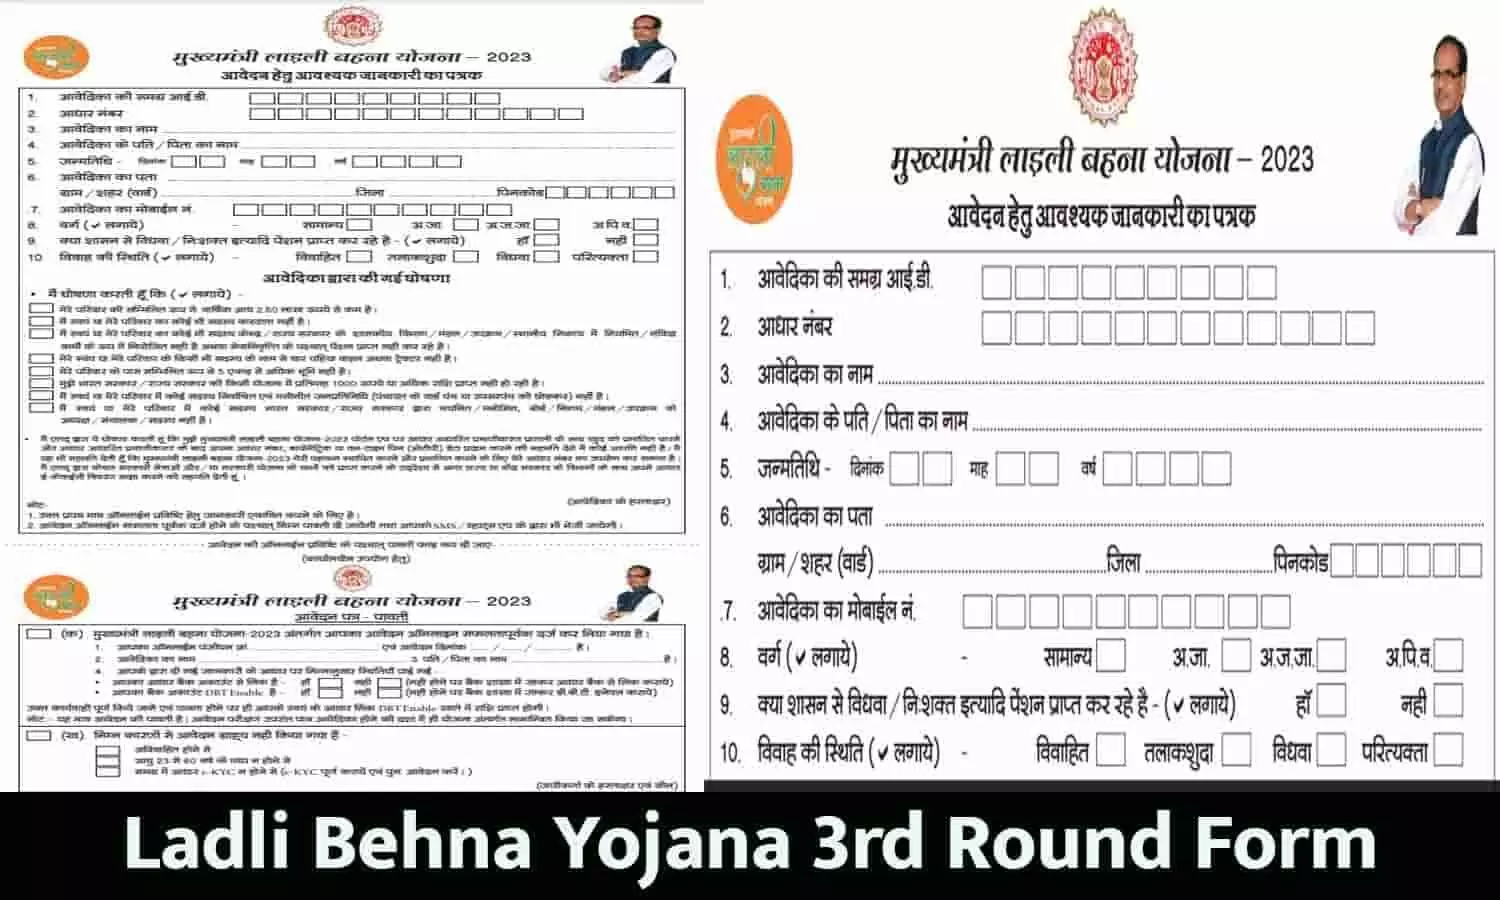 Ladli Behna Yojana 3rd Round Form Kab Se Bharega: लाड़ली बहना योजना के तीसरे चरण का फॉर्म कब से भरेगा?